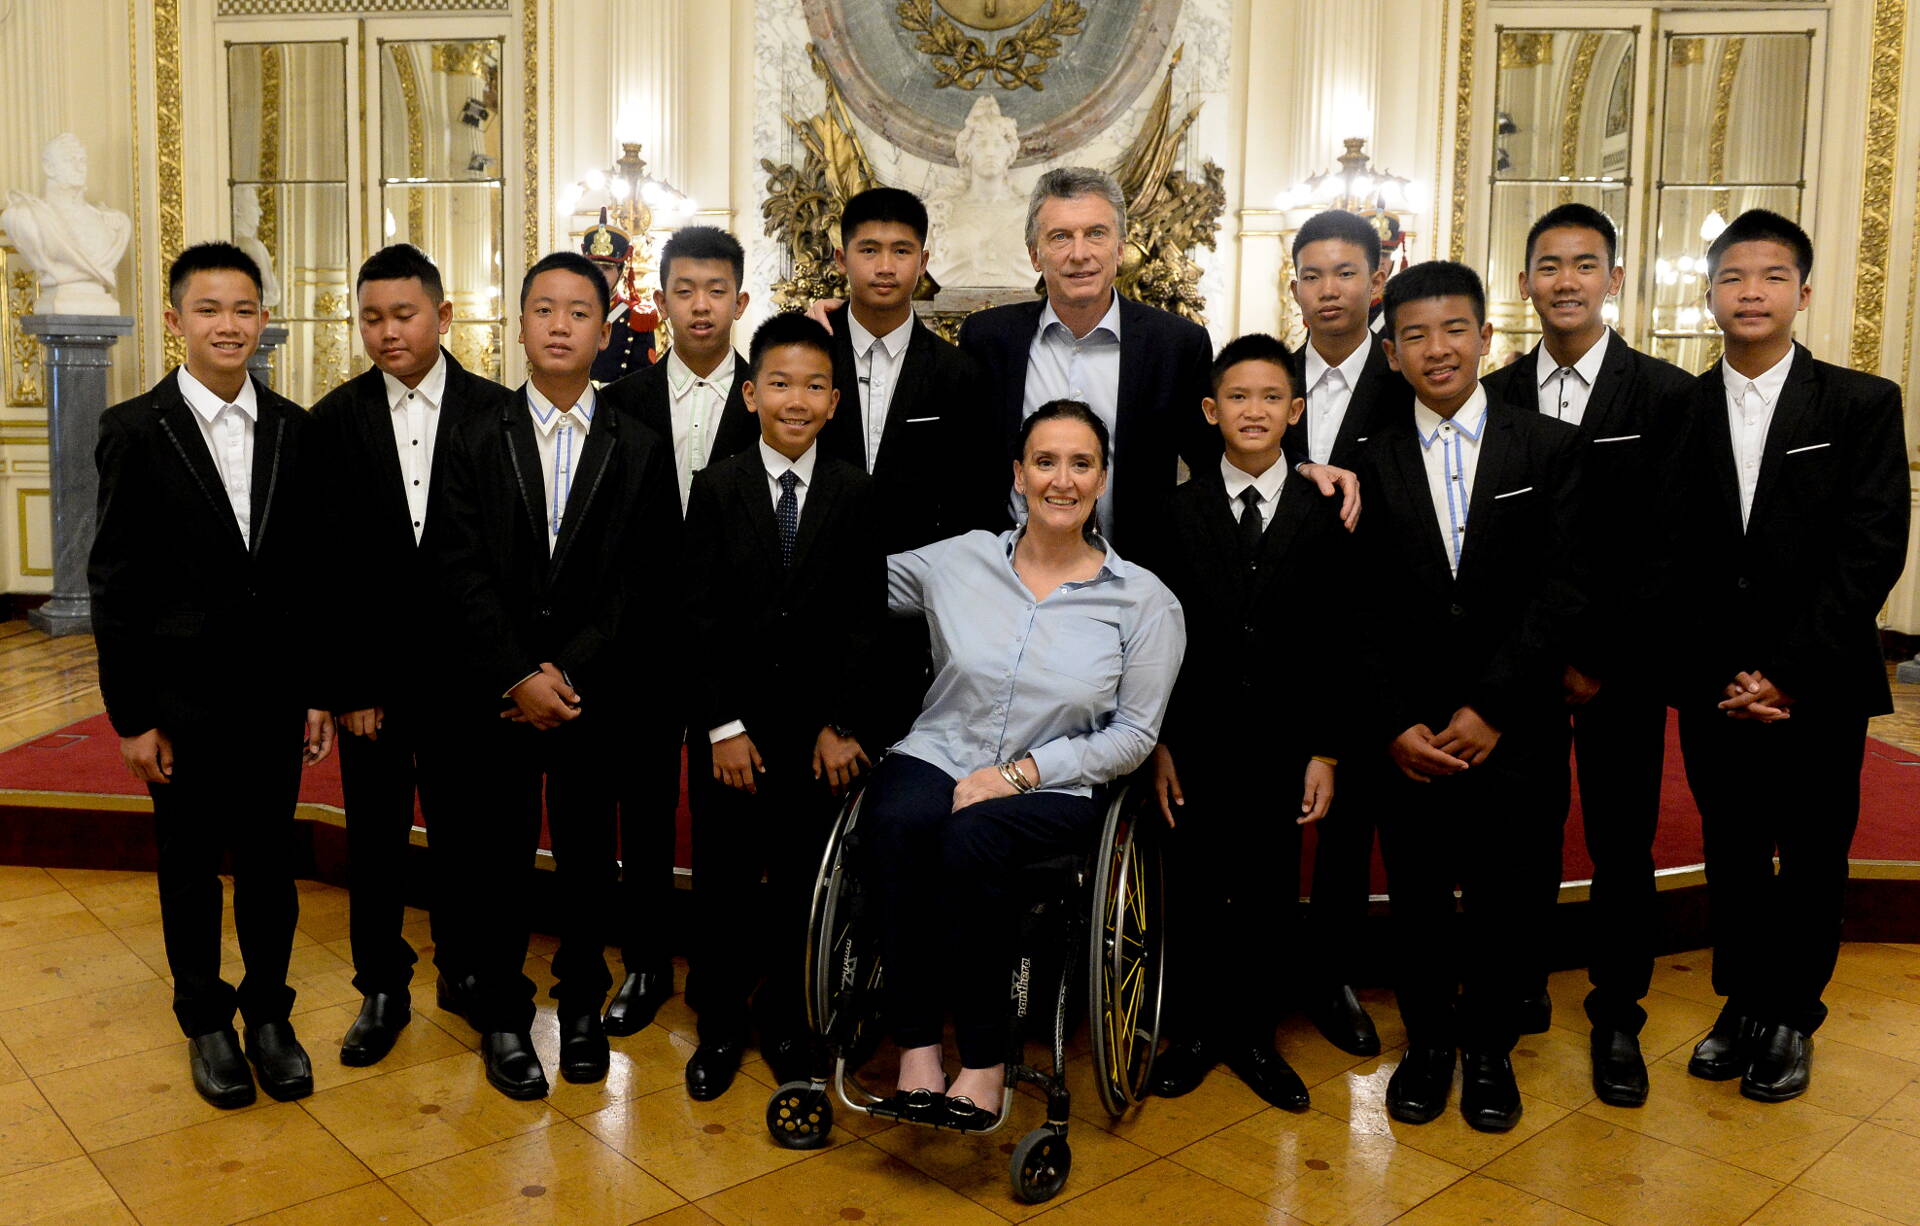 El Presidente saludó a los chicos tailandeses que estuvieron atrapados en una caverna durante 17 días